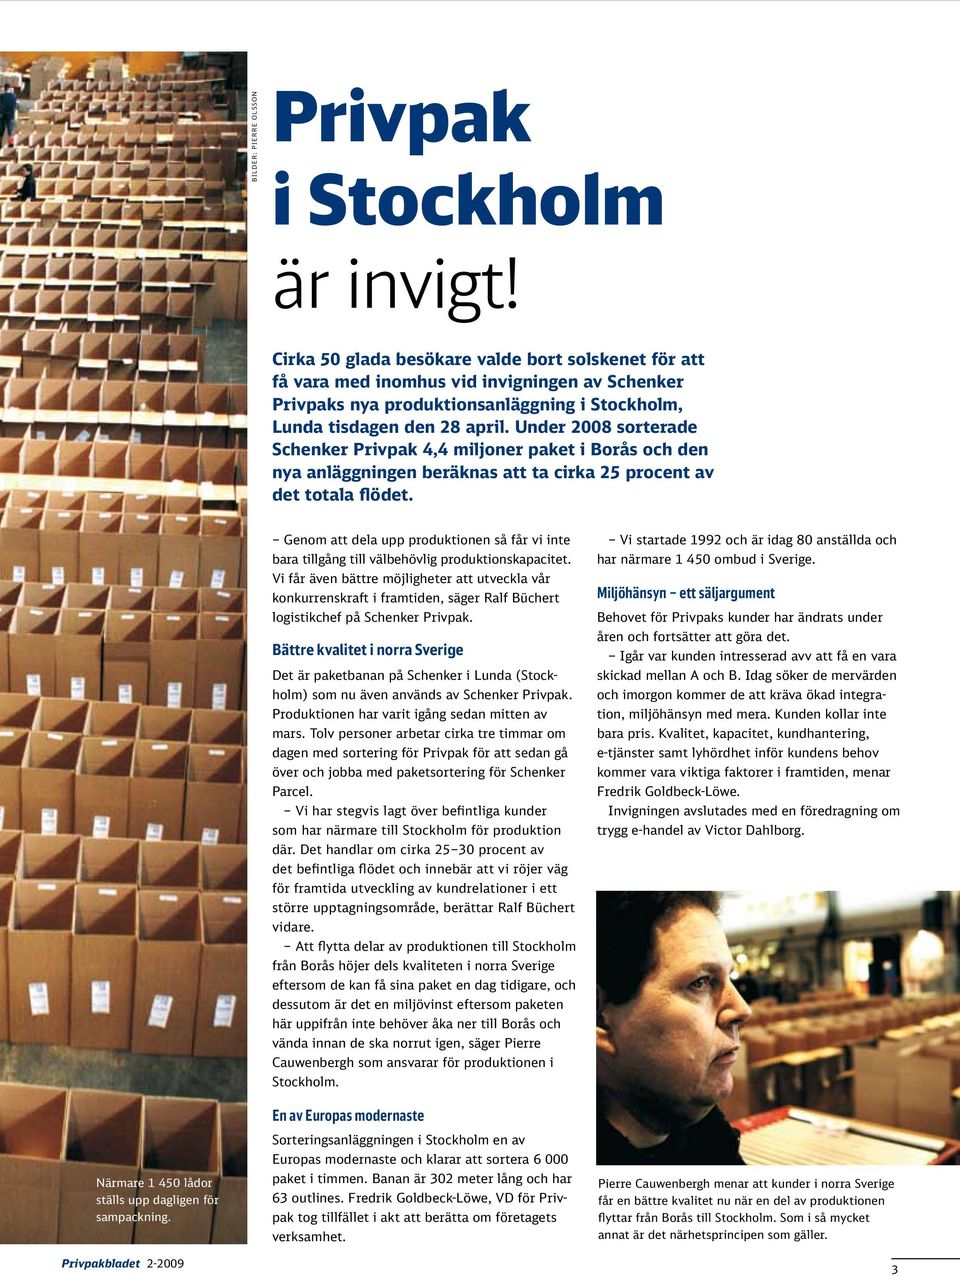 Under 2008 sorterade Schenker Privpak 4,4 miljoner paket i Borås och den nya anläggningen beräknas att ta cirka 25 procent av det totala flödet.